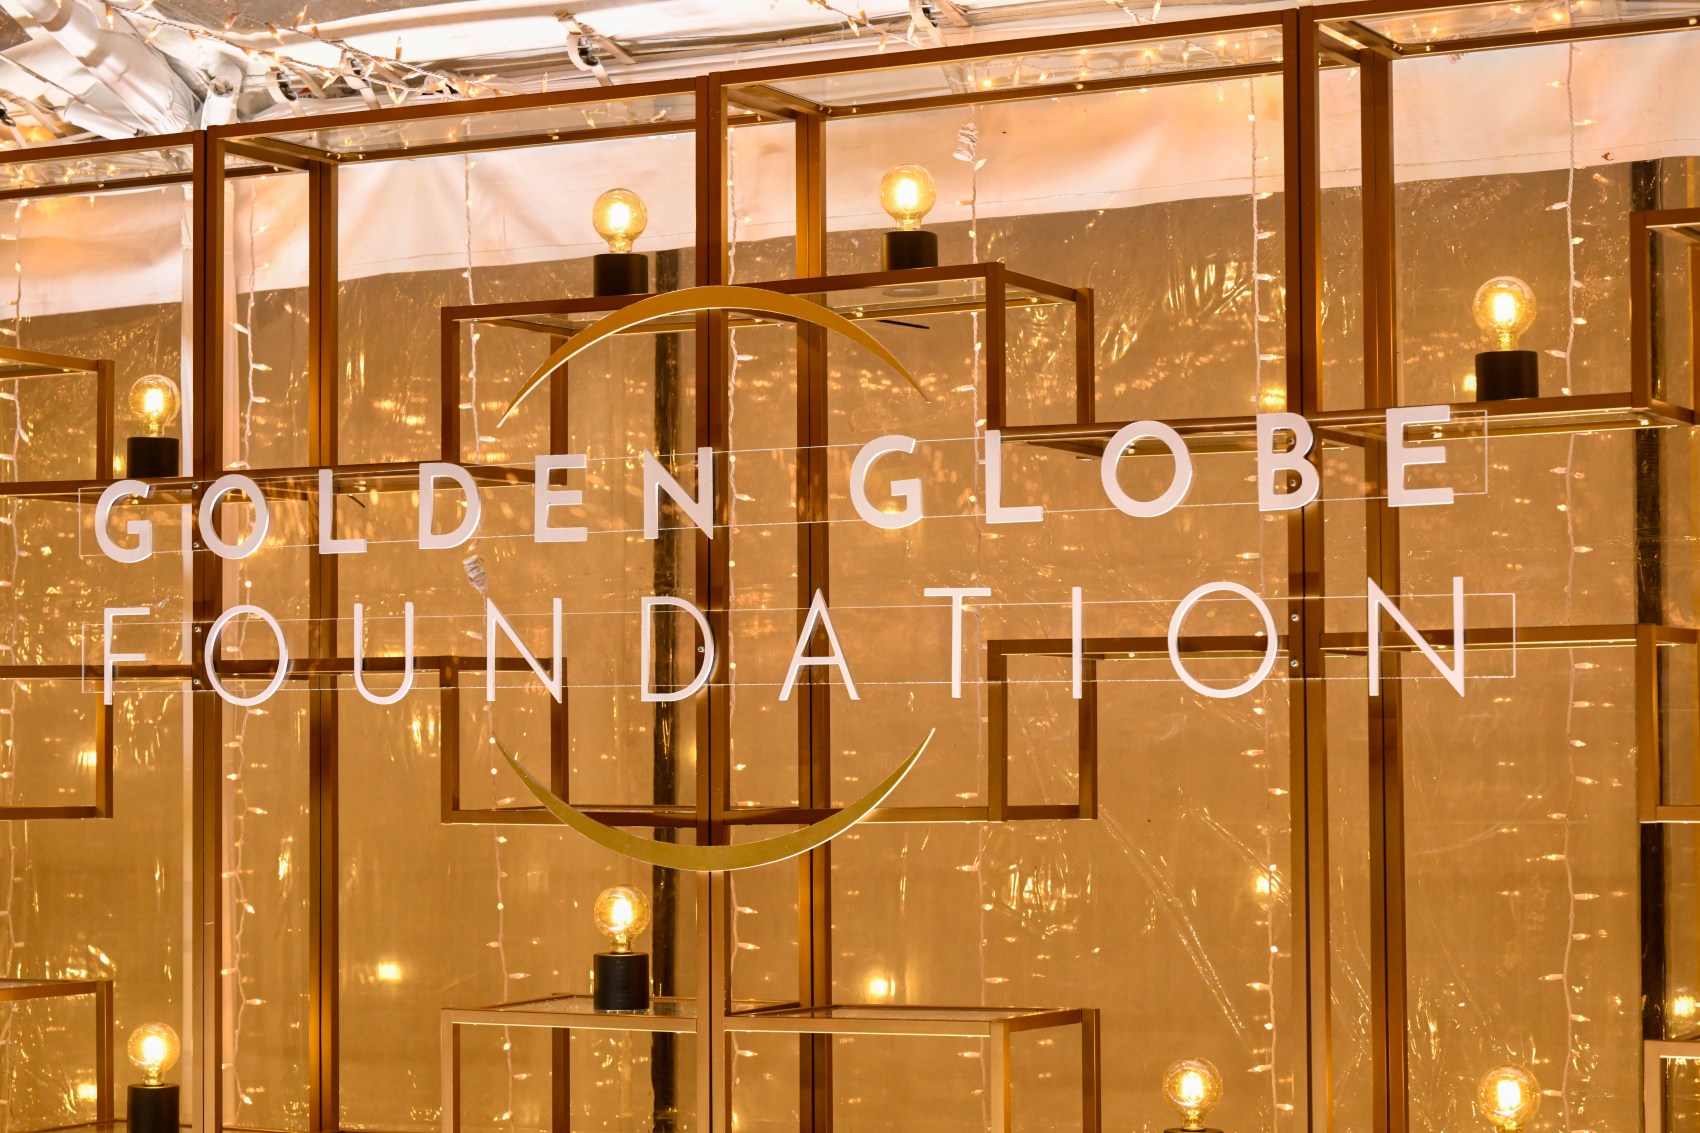 Golden Globe Foundation Dinner